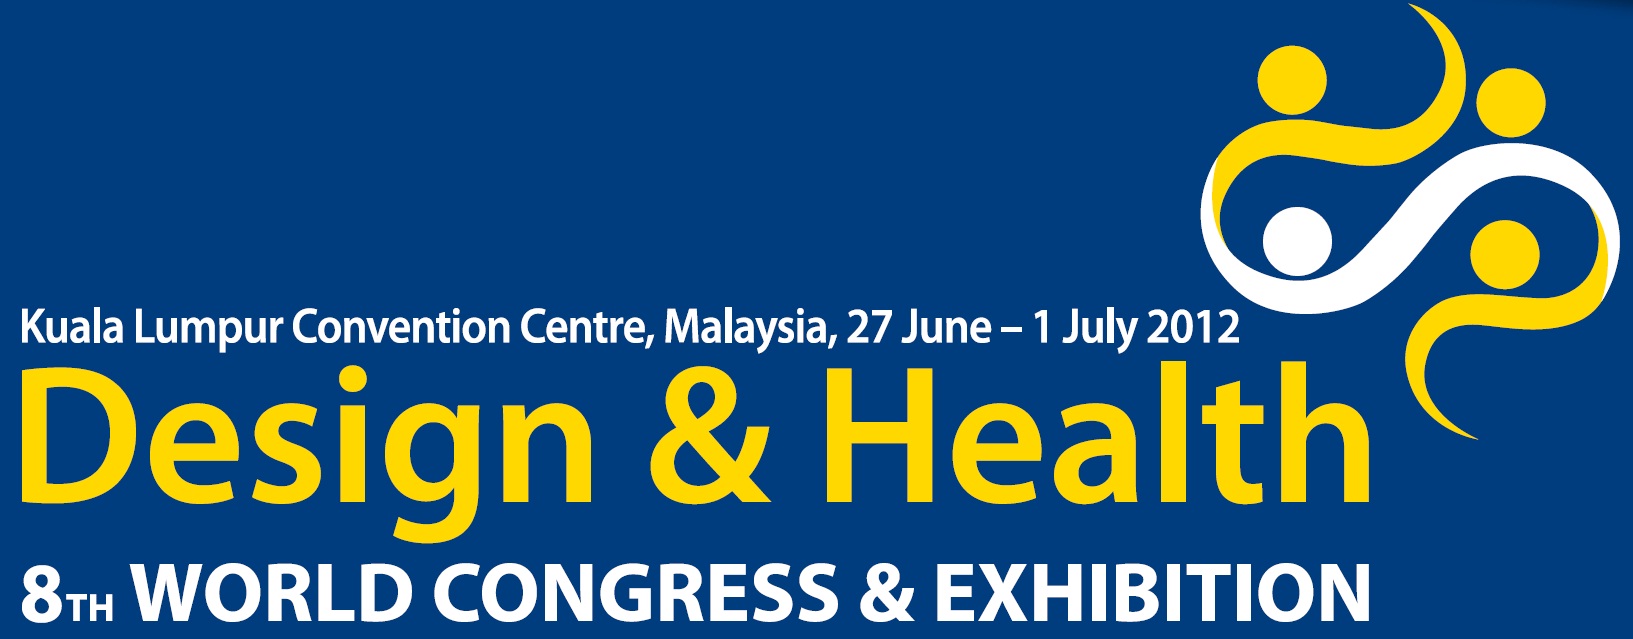 The 8th World Congress on Design & Health in Kuala Lumpur 2012